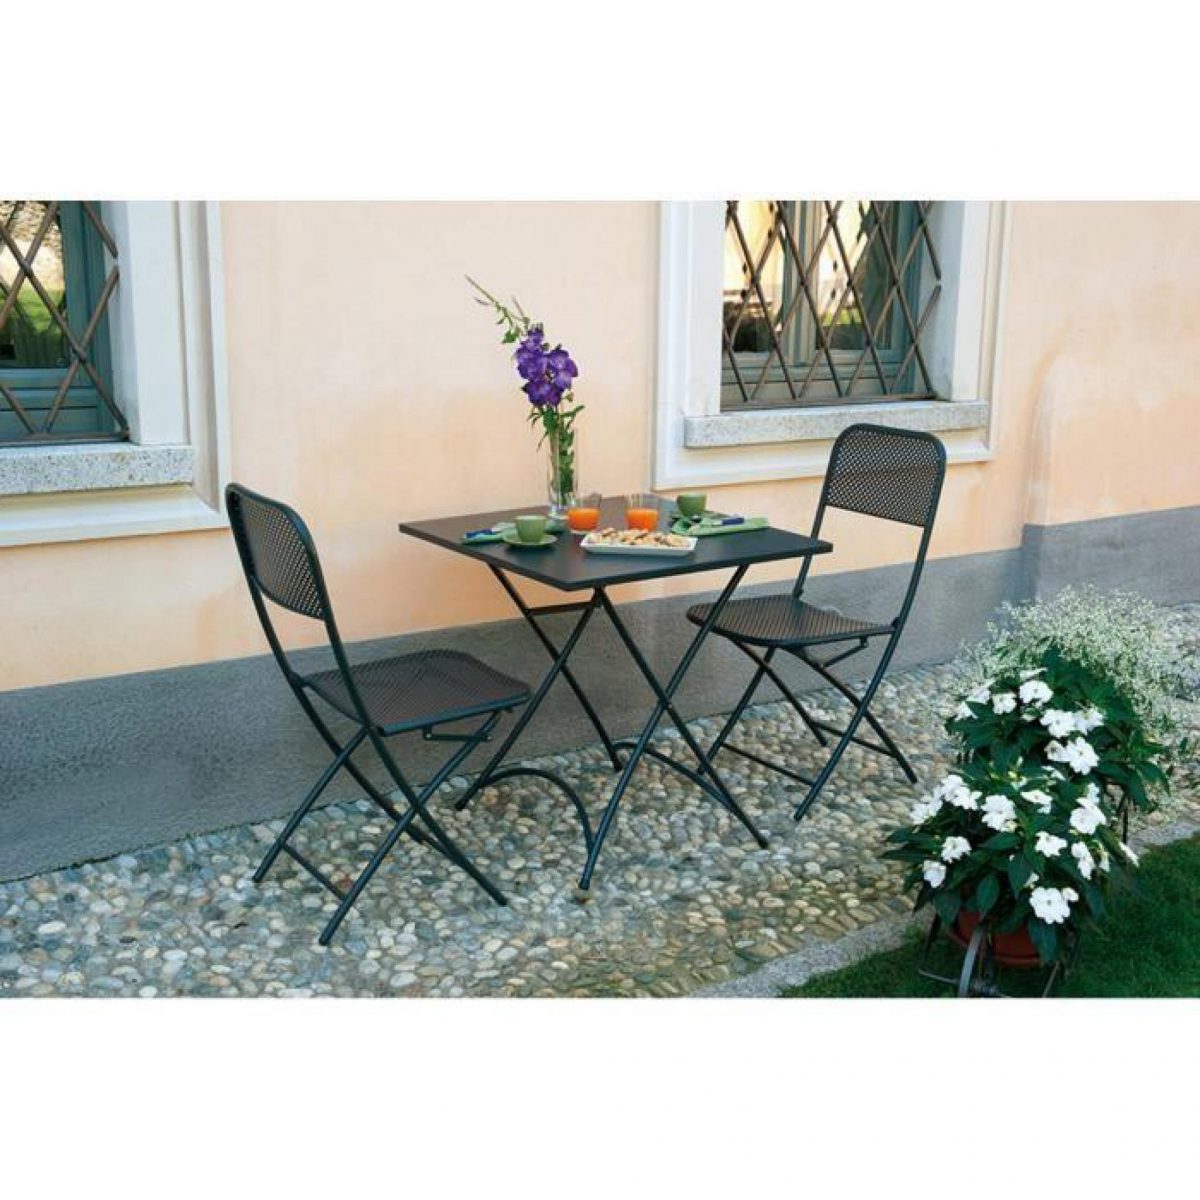 chaise pliante de jardin en fer forge coloris gris 2 1200x1200